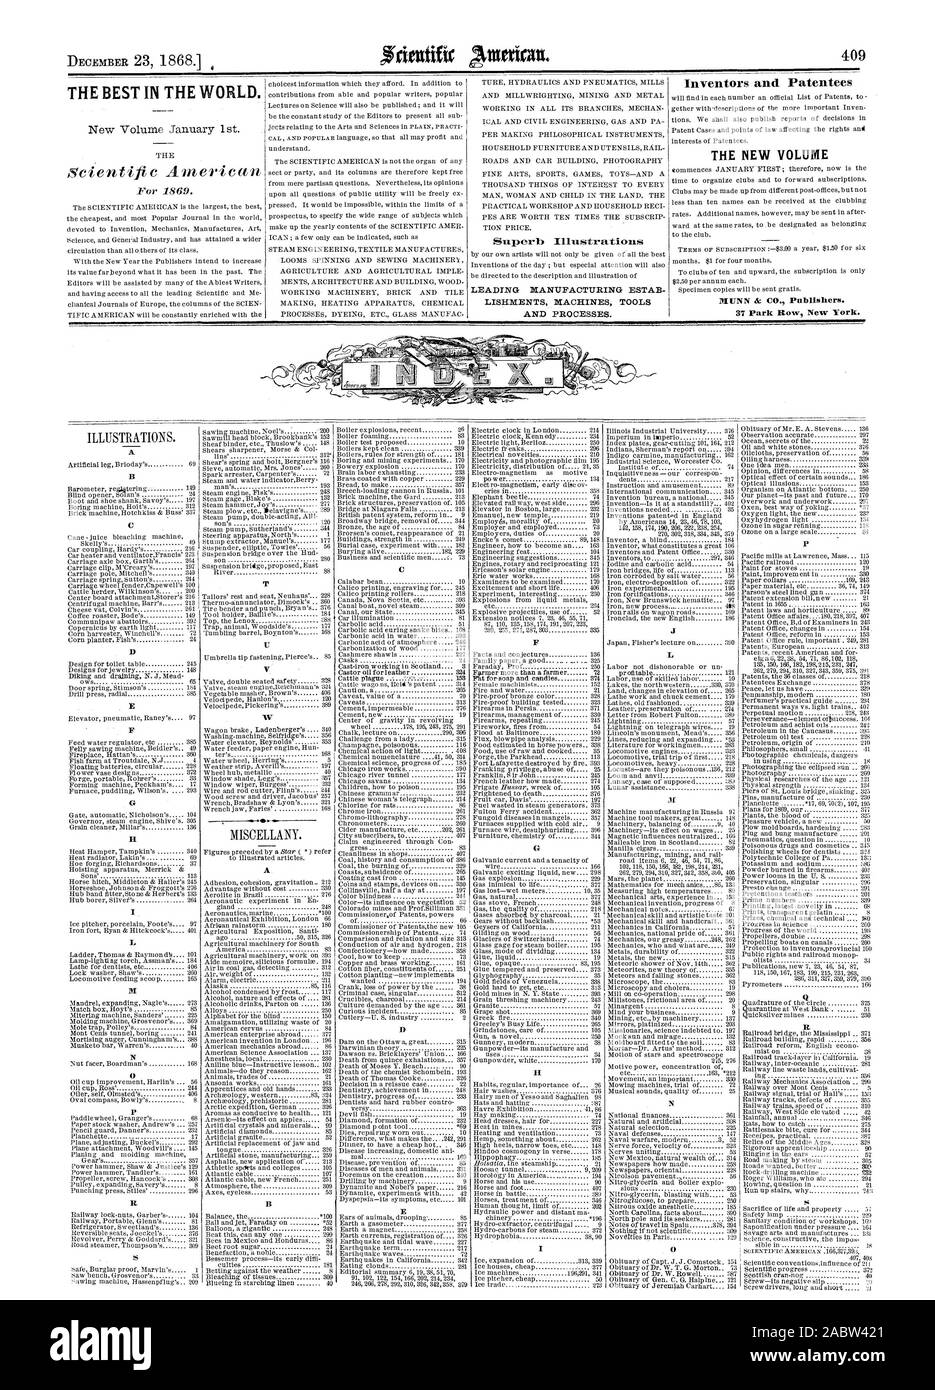 Das BESTE IN DER WELT. Erfinder und. Patentinhaber DIE NEUE BAND 37 Park Row New York. A C D A II E L P Q, Scientific American, 1868-12-23 Stockfoto